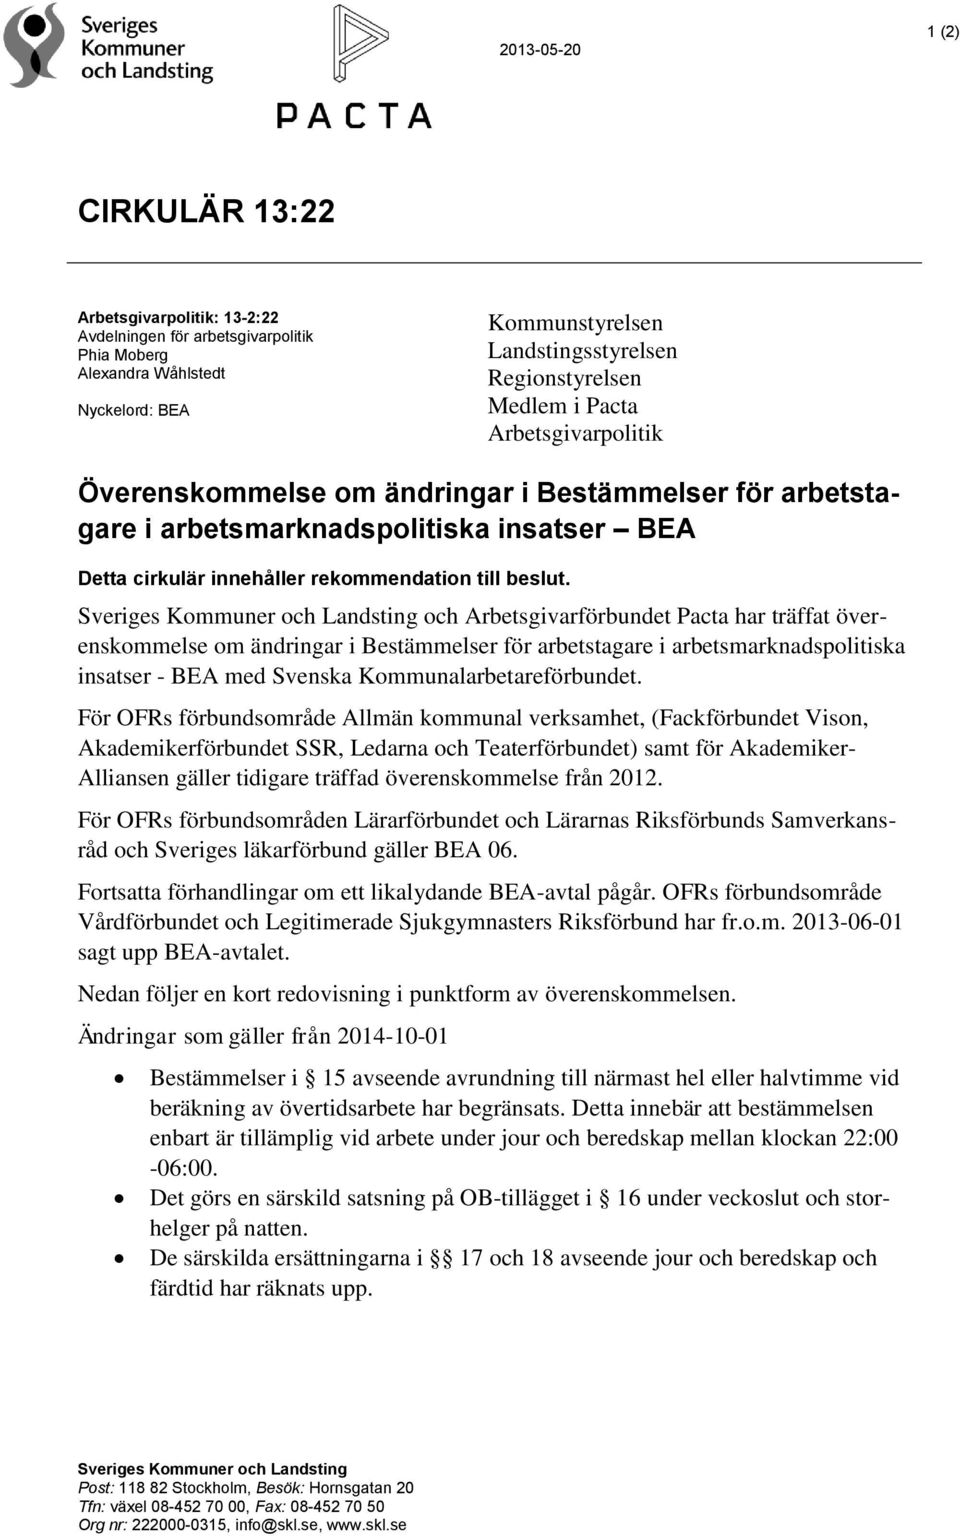 Sveriges Kommuner och Landsting och Arbetsgivarförbundet Pacta har träffat överenskommelse om ändringar i Bestämmelser för arbetstagare i arbetsmarknadspolitiska insatser - BEA med Svenska